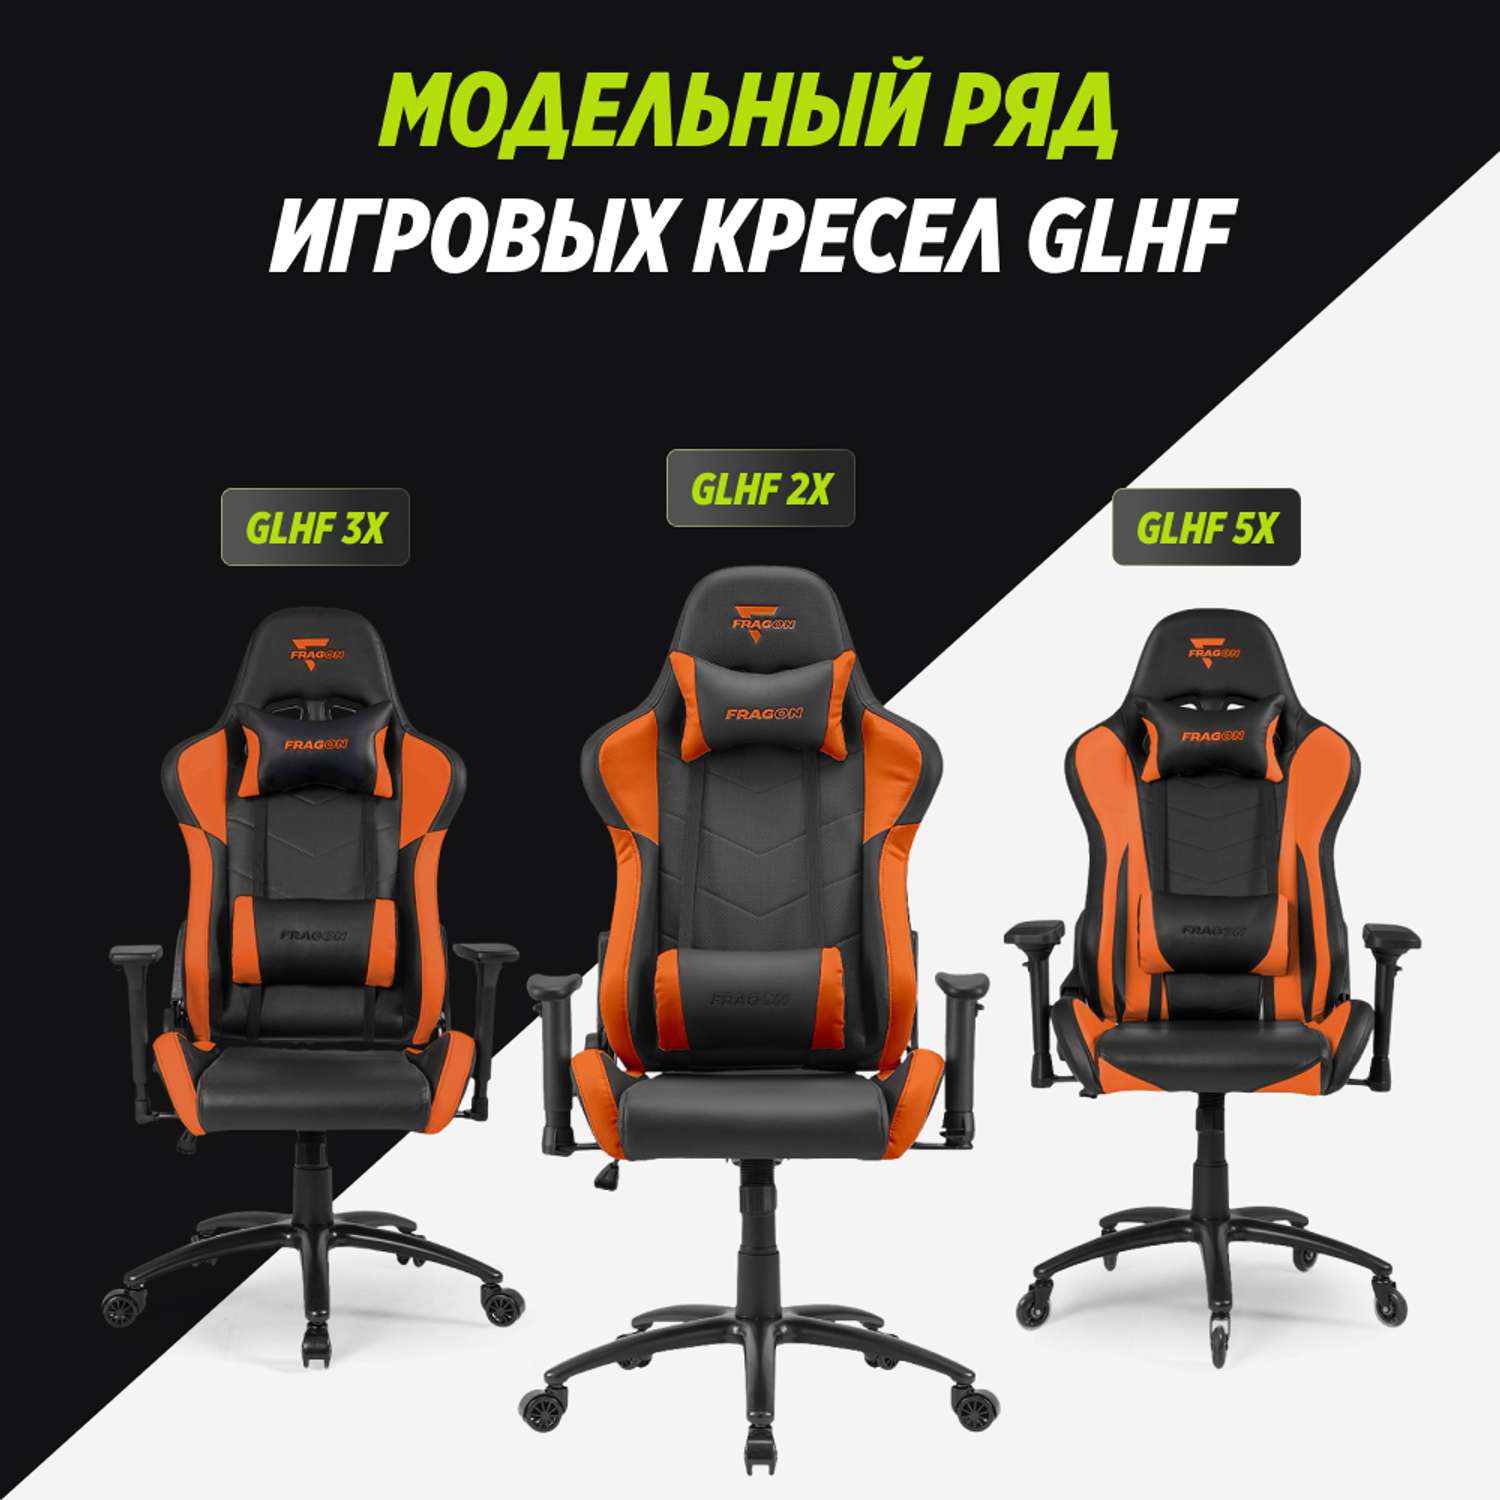 Компьютерное кресло GLHF серия 2X Black/Orange - фото 10